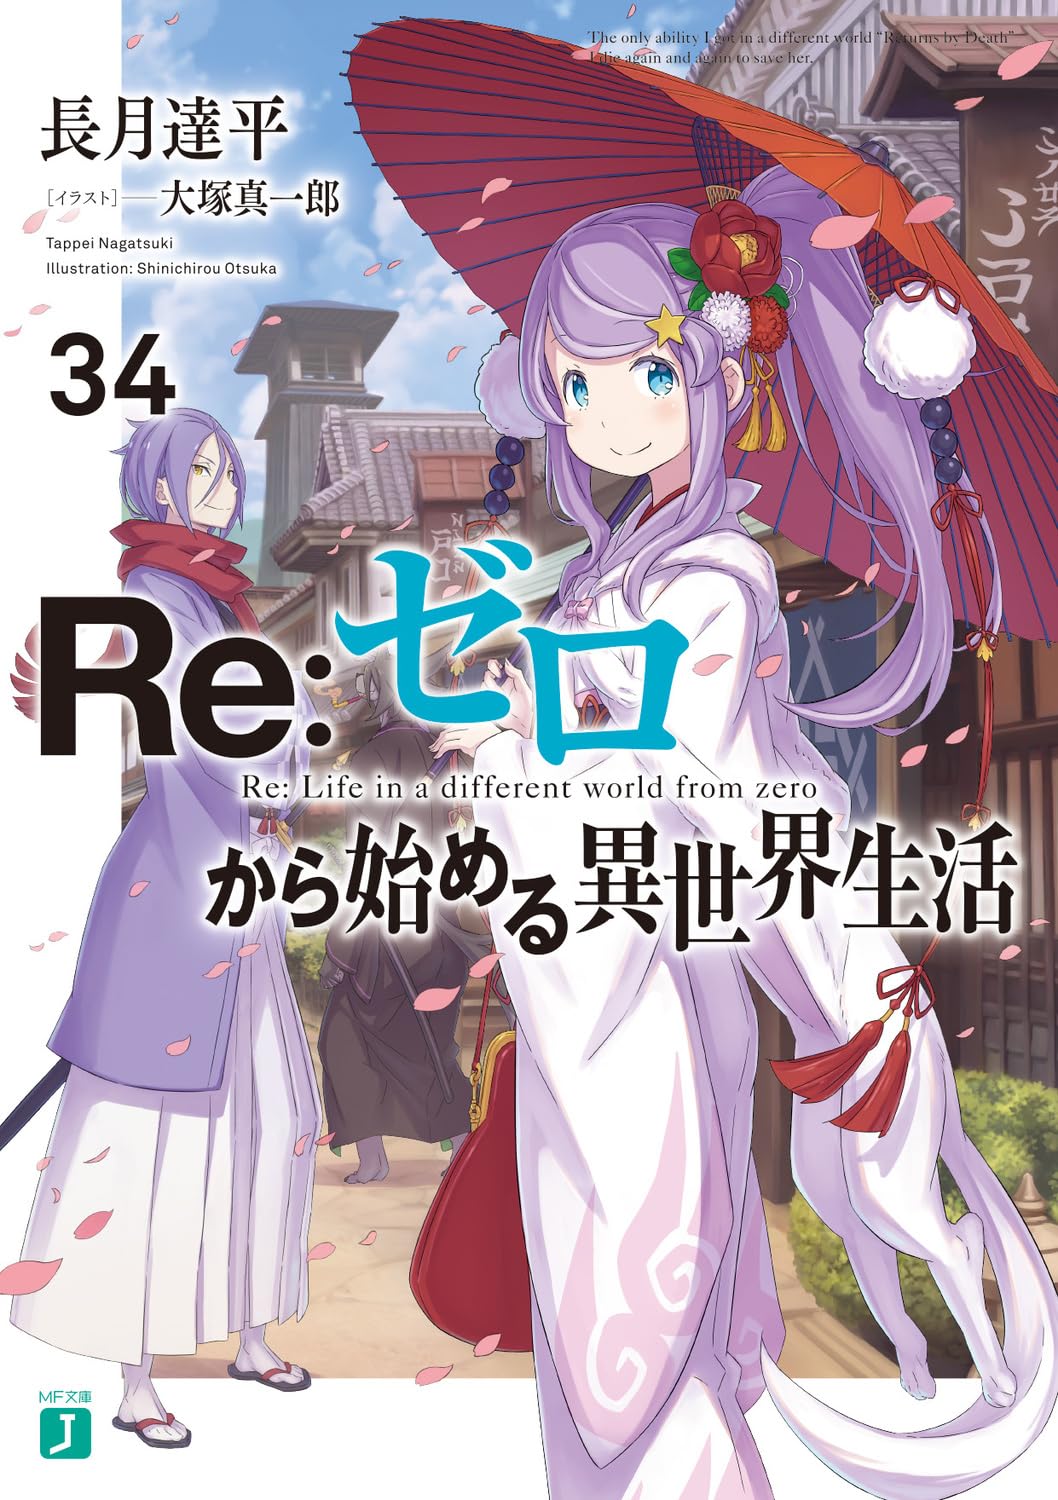 Novos volumes de Youkoso Jitsuryoku e Re:Zero – Light Novels mais vendidas  (Junho 21 - 27) - IntoxiAnime